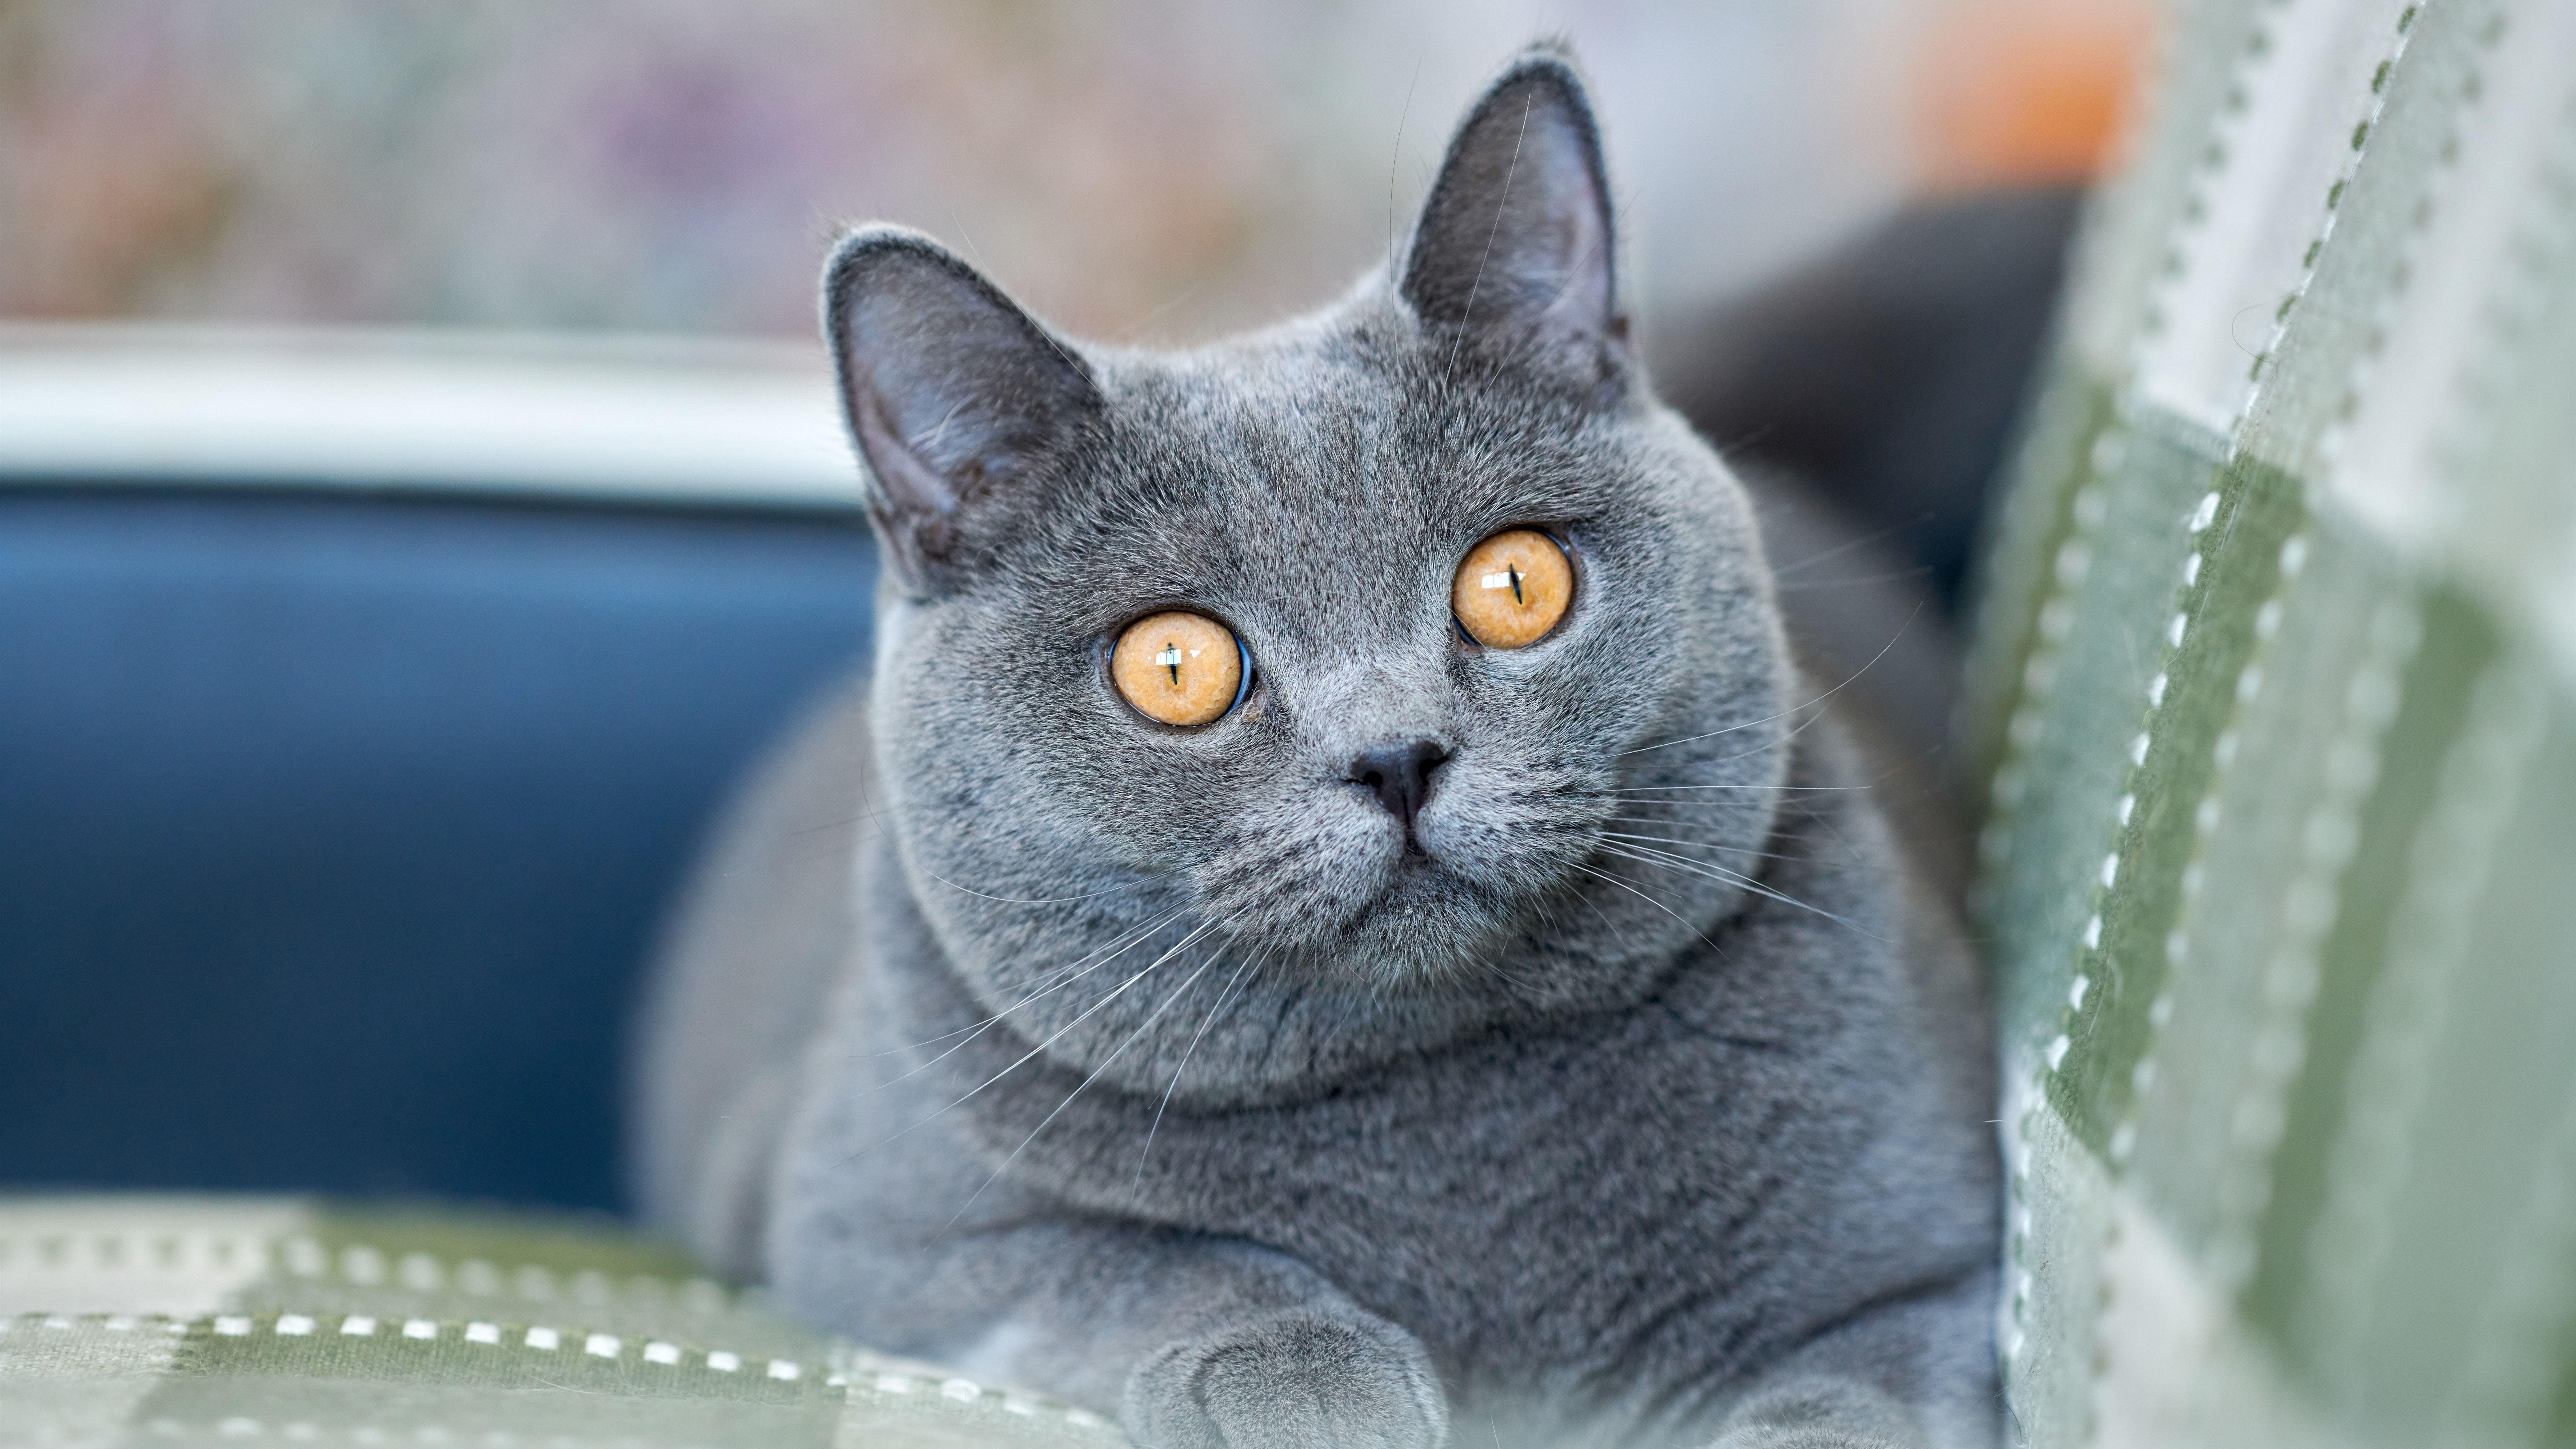 Фотографии породы британских кошек. Британская короткошёрстная кошка. Британская короткошёрстная кошка голубая. Картезианская кошка британец. Британская короткошёрстная кошка шартрез.